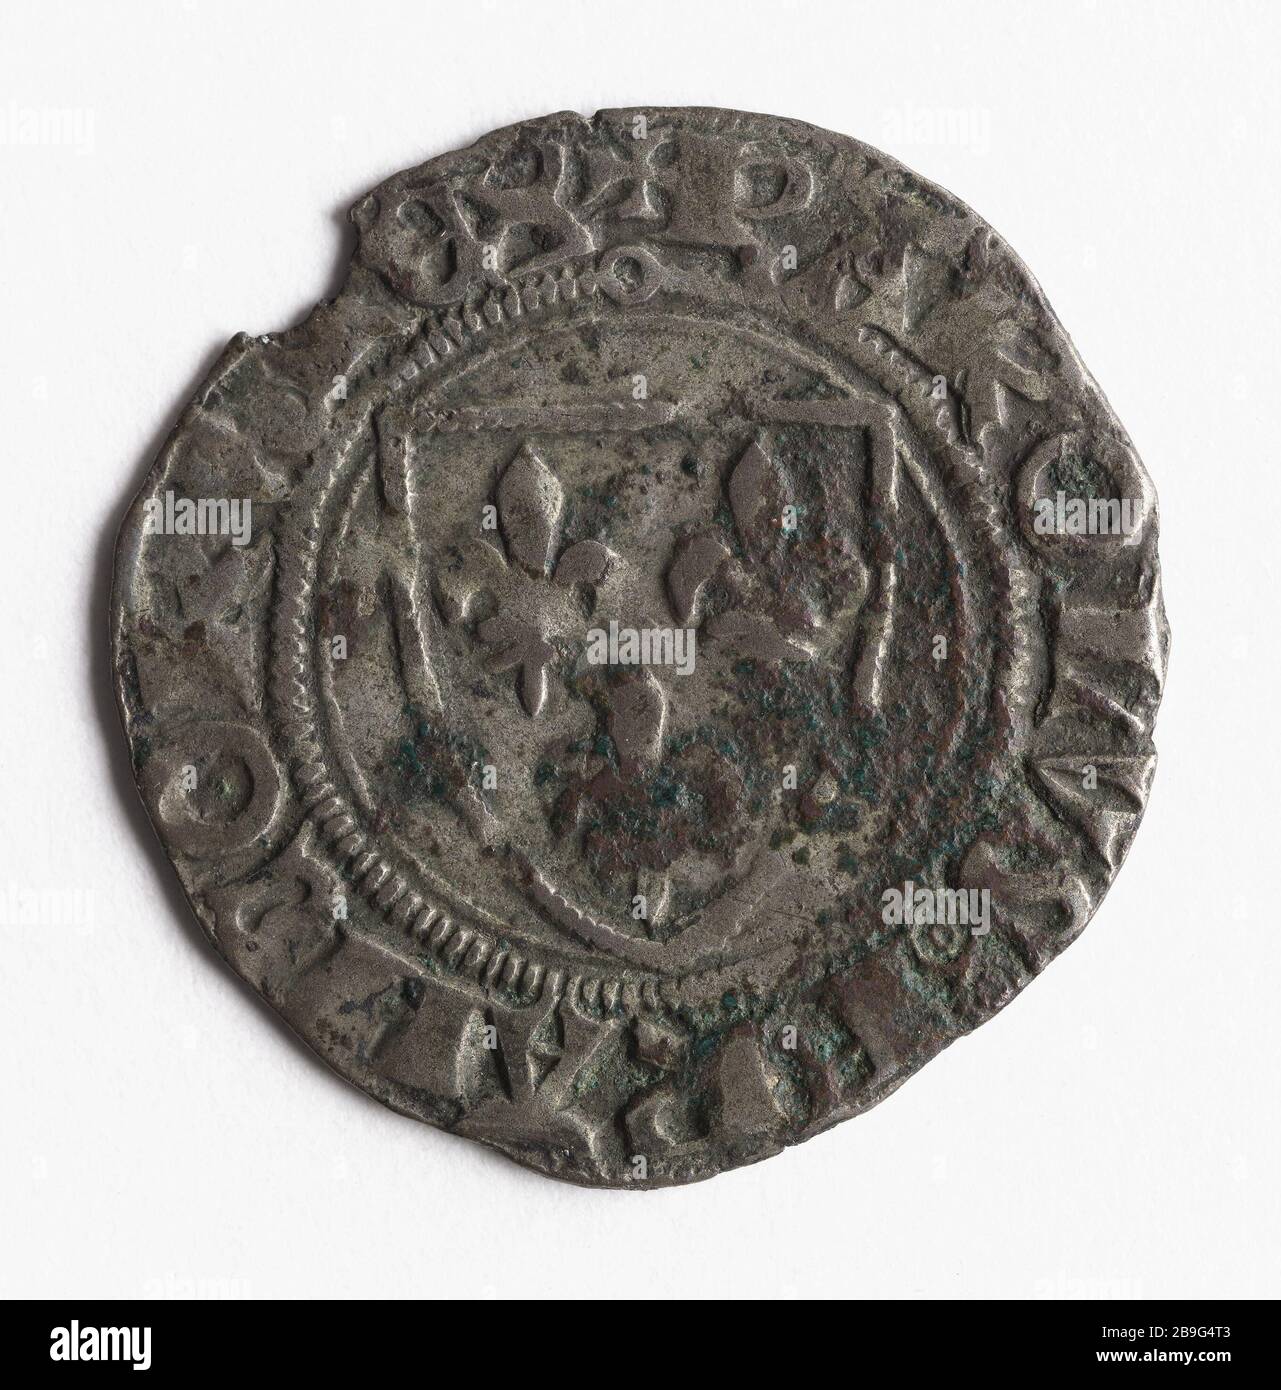 White dijo 'Guénar' dinero de Carlos VI, 1411 (título falso) Blanc dit 'Guénar' en argent de Carlos VI Argent, 1411. París, musée Carnavalet. Foto de stock